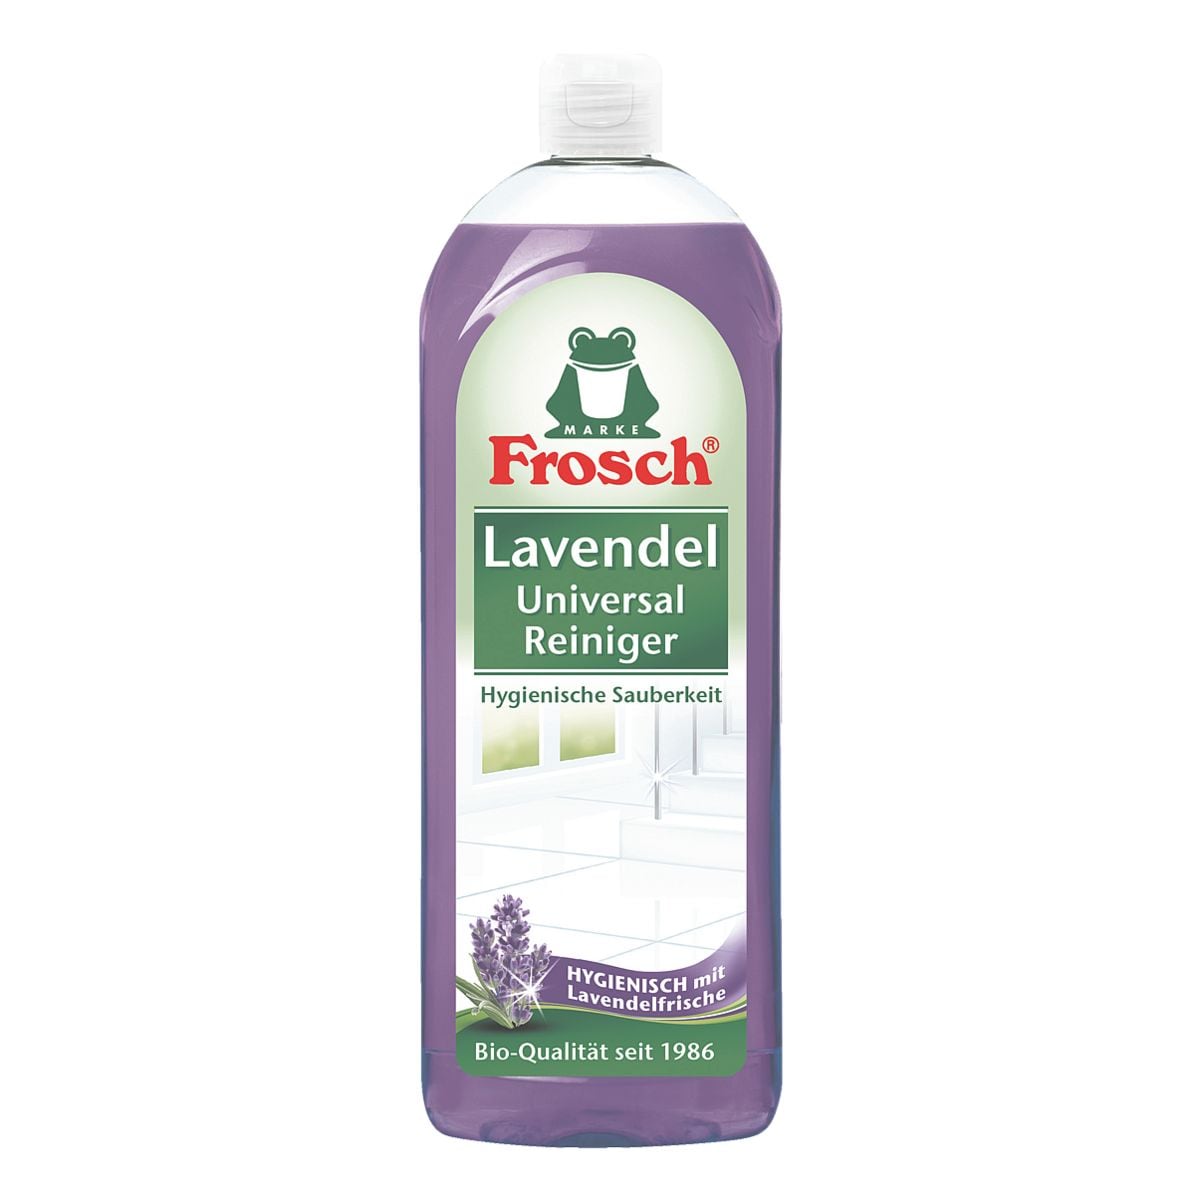 Frosch Universalreiniger Lavendel